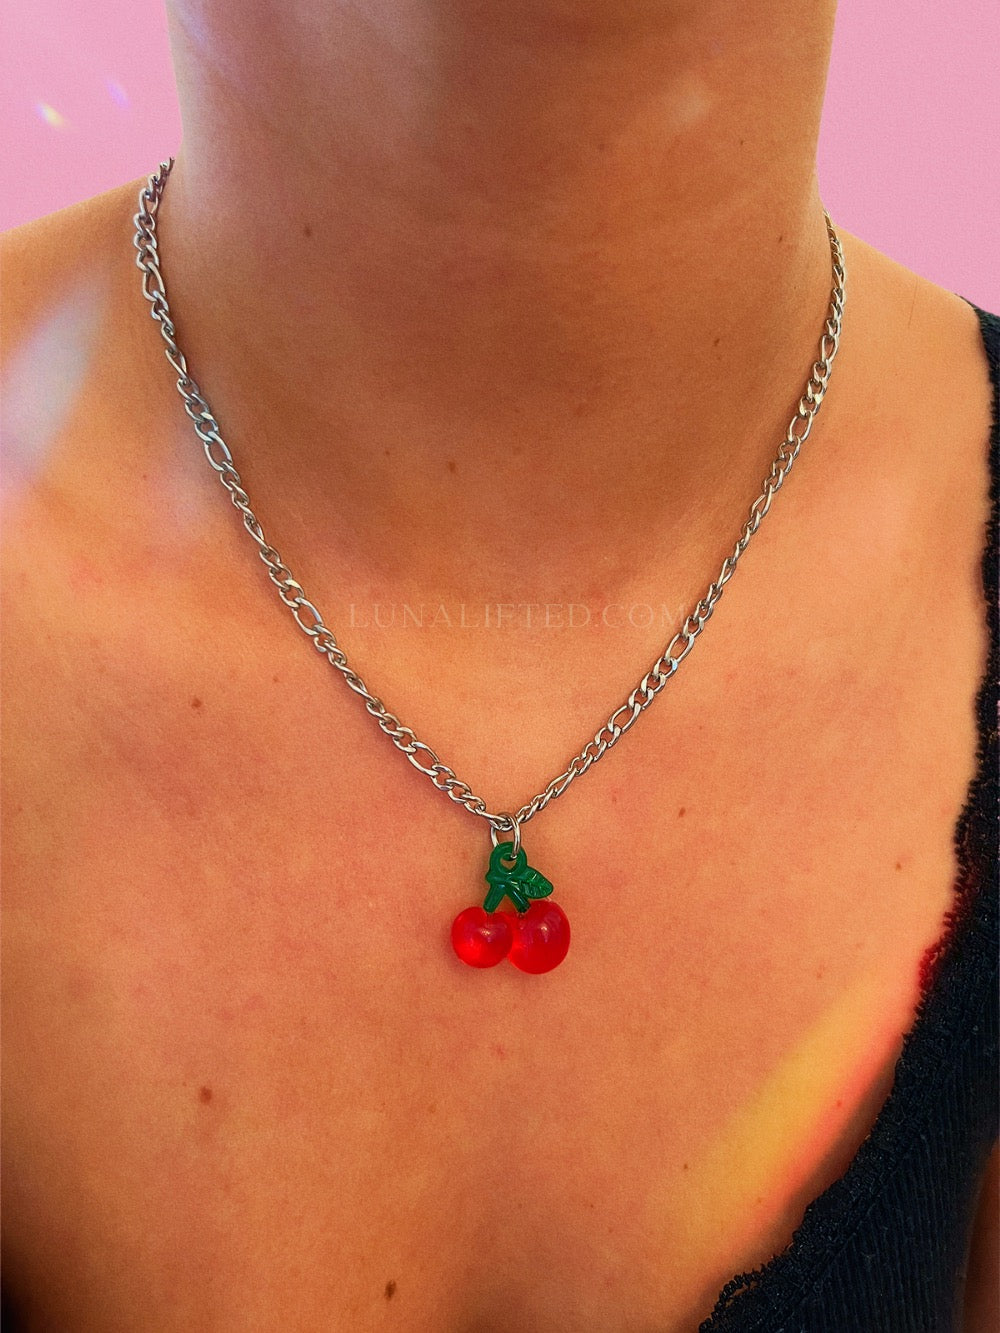 Cherrybomb Necklace